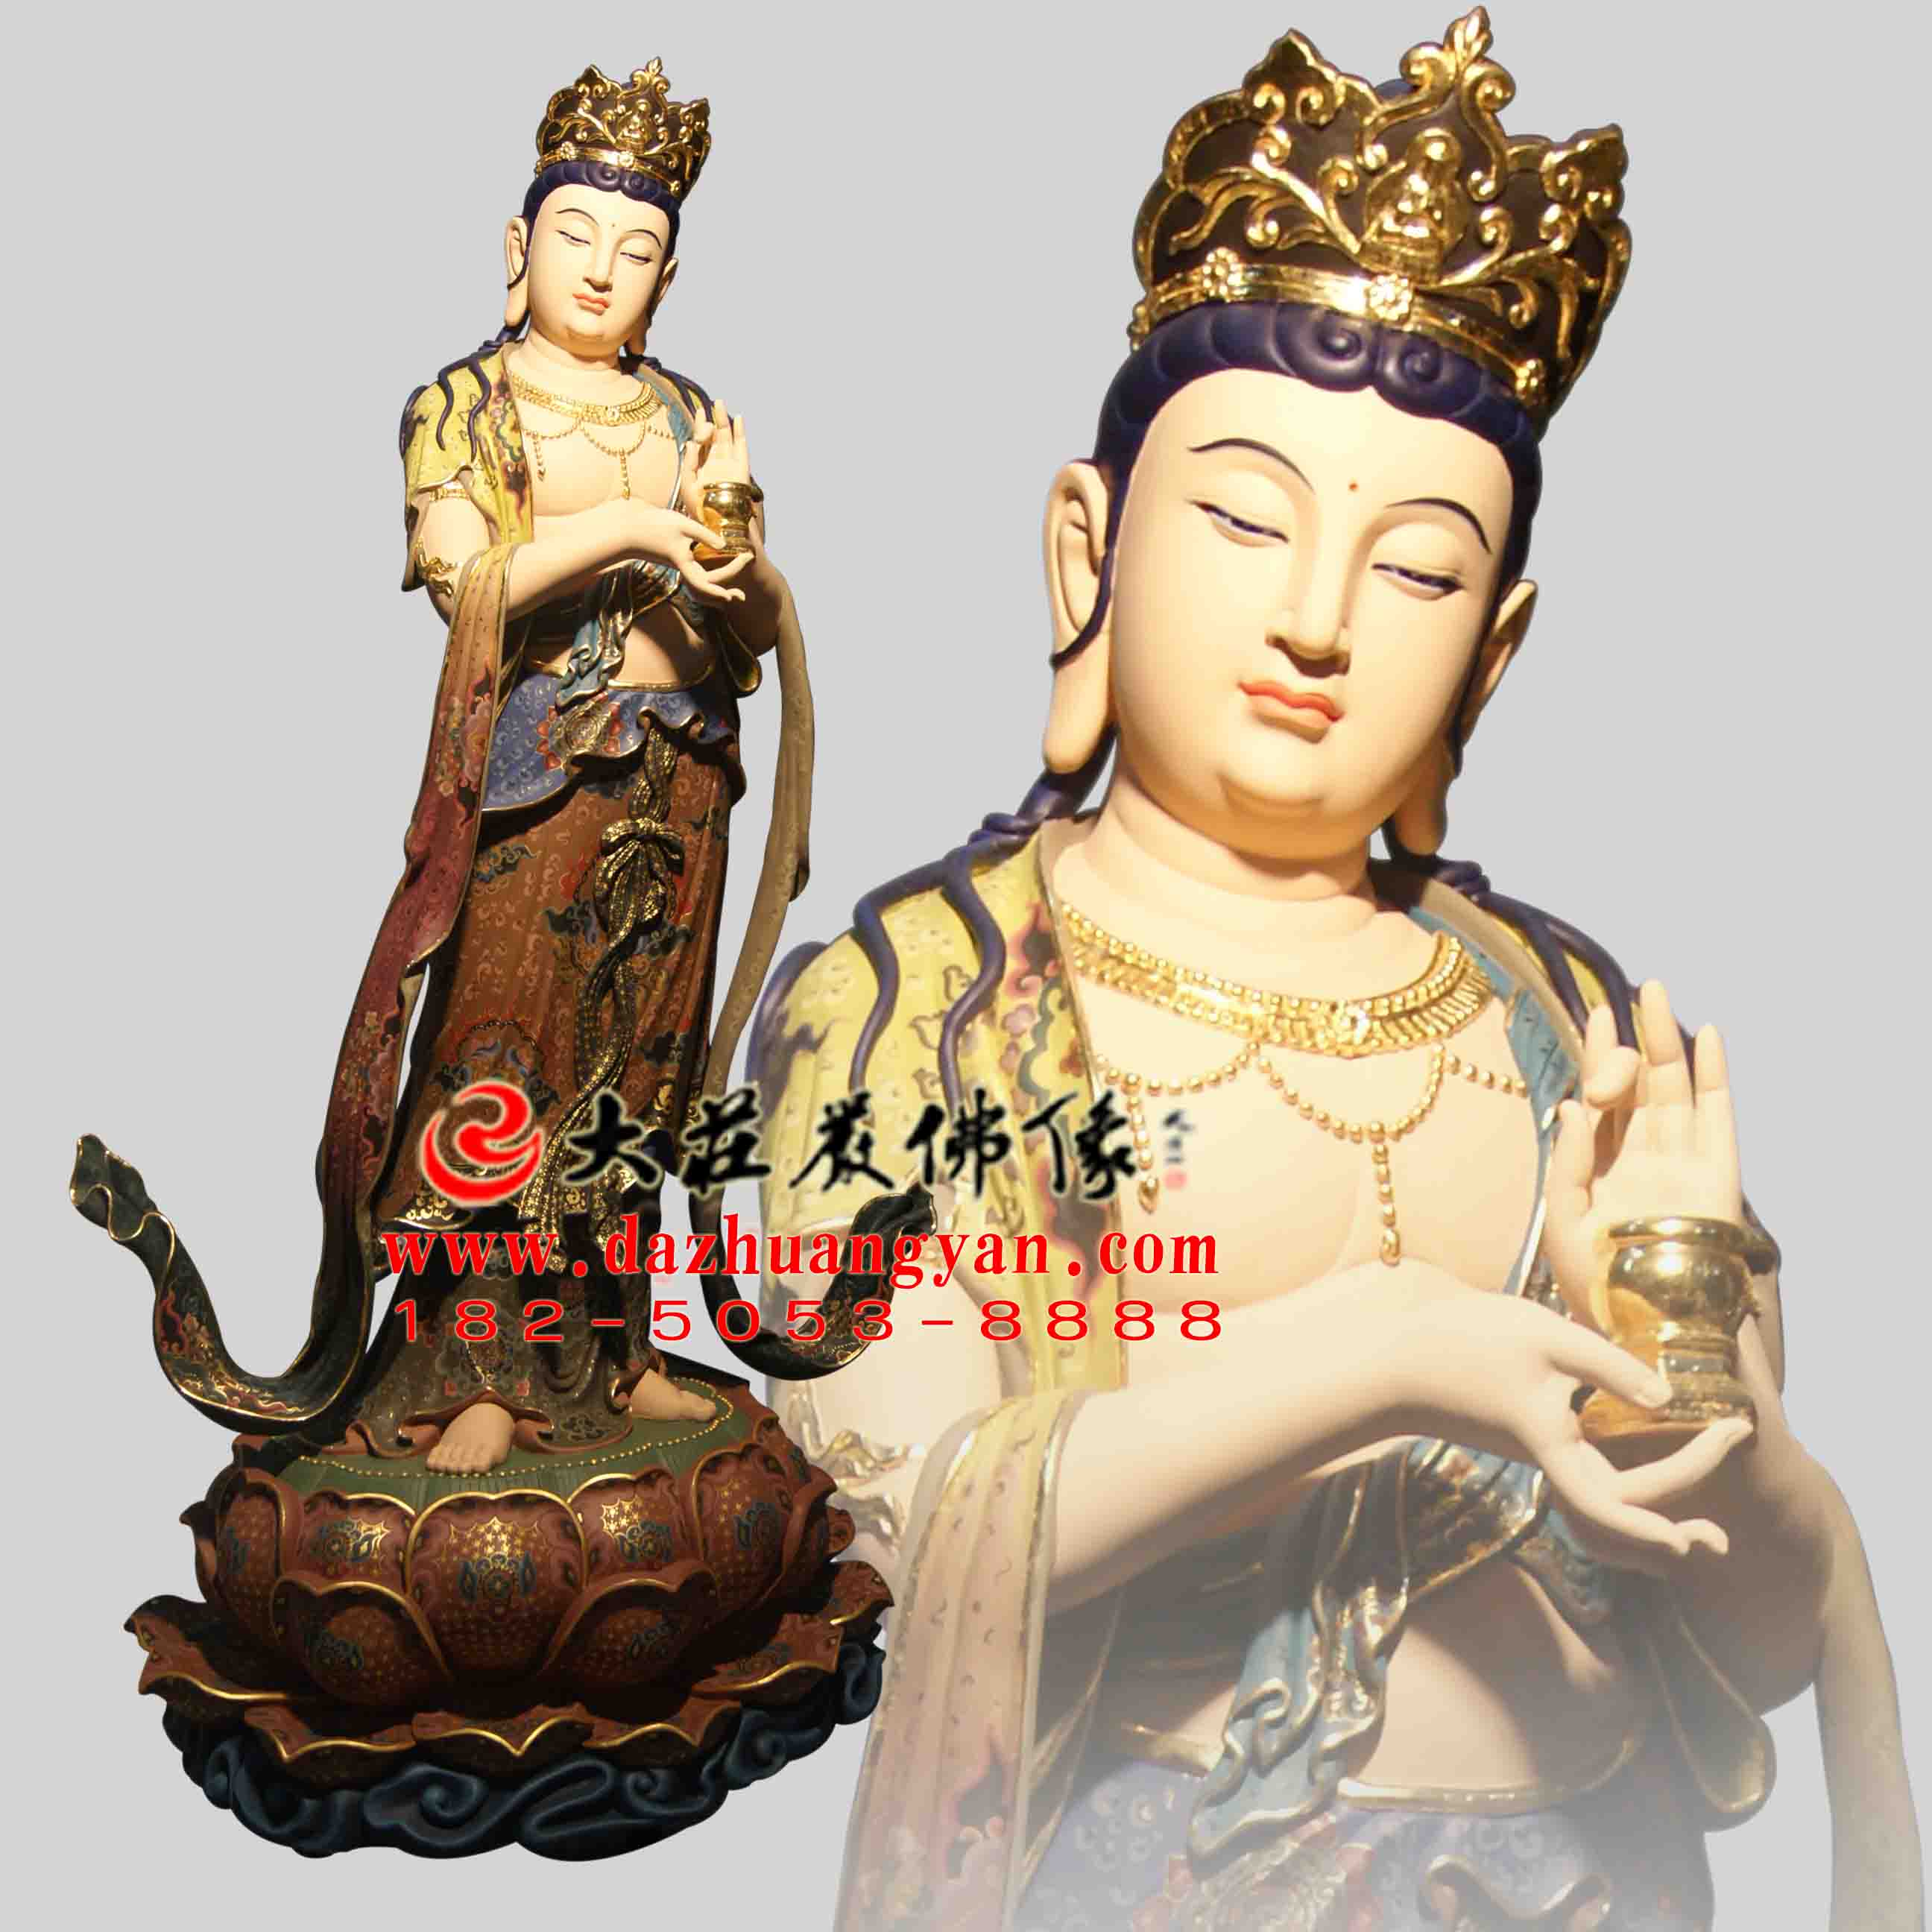 生漆脱胎八大菩萨之地藏菩萨彩绘佛像